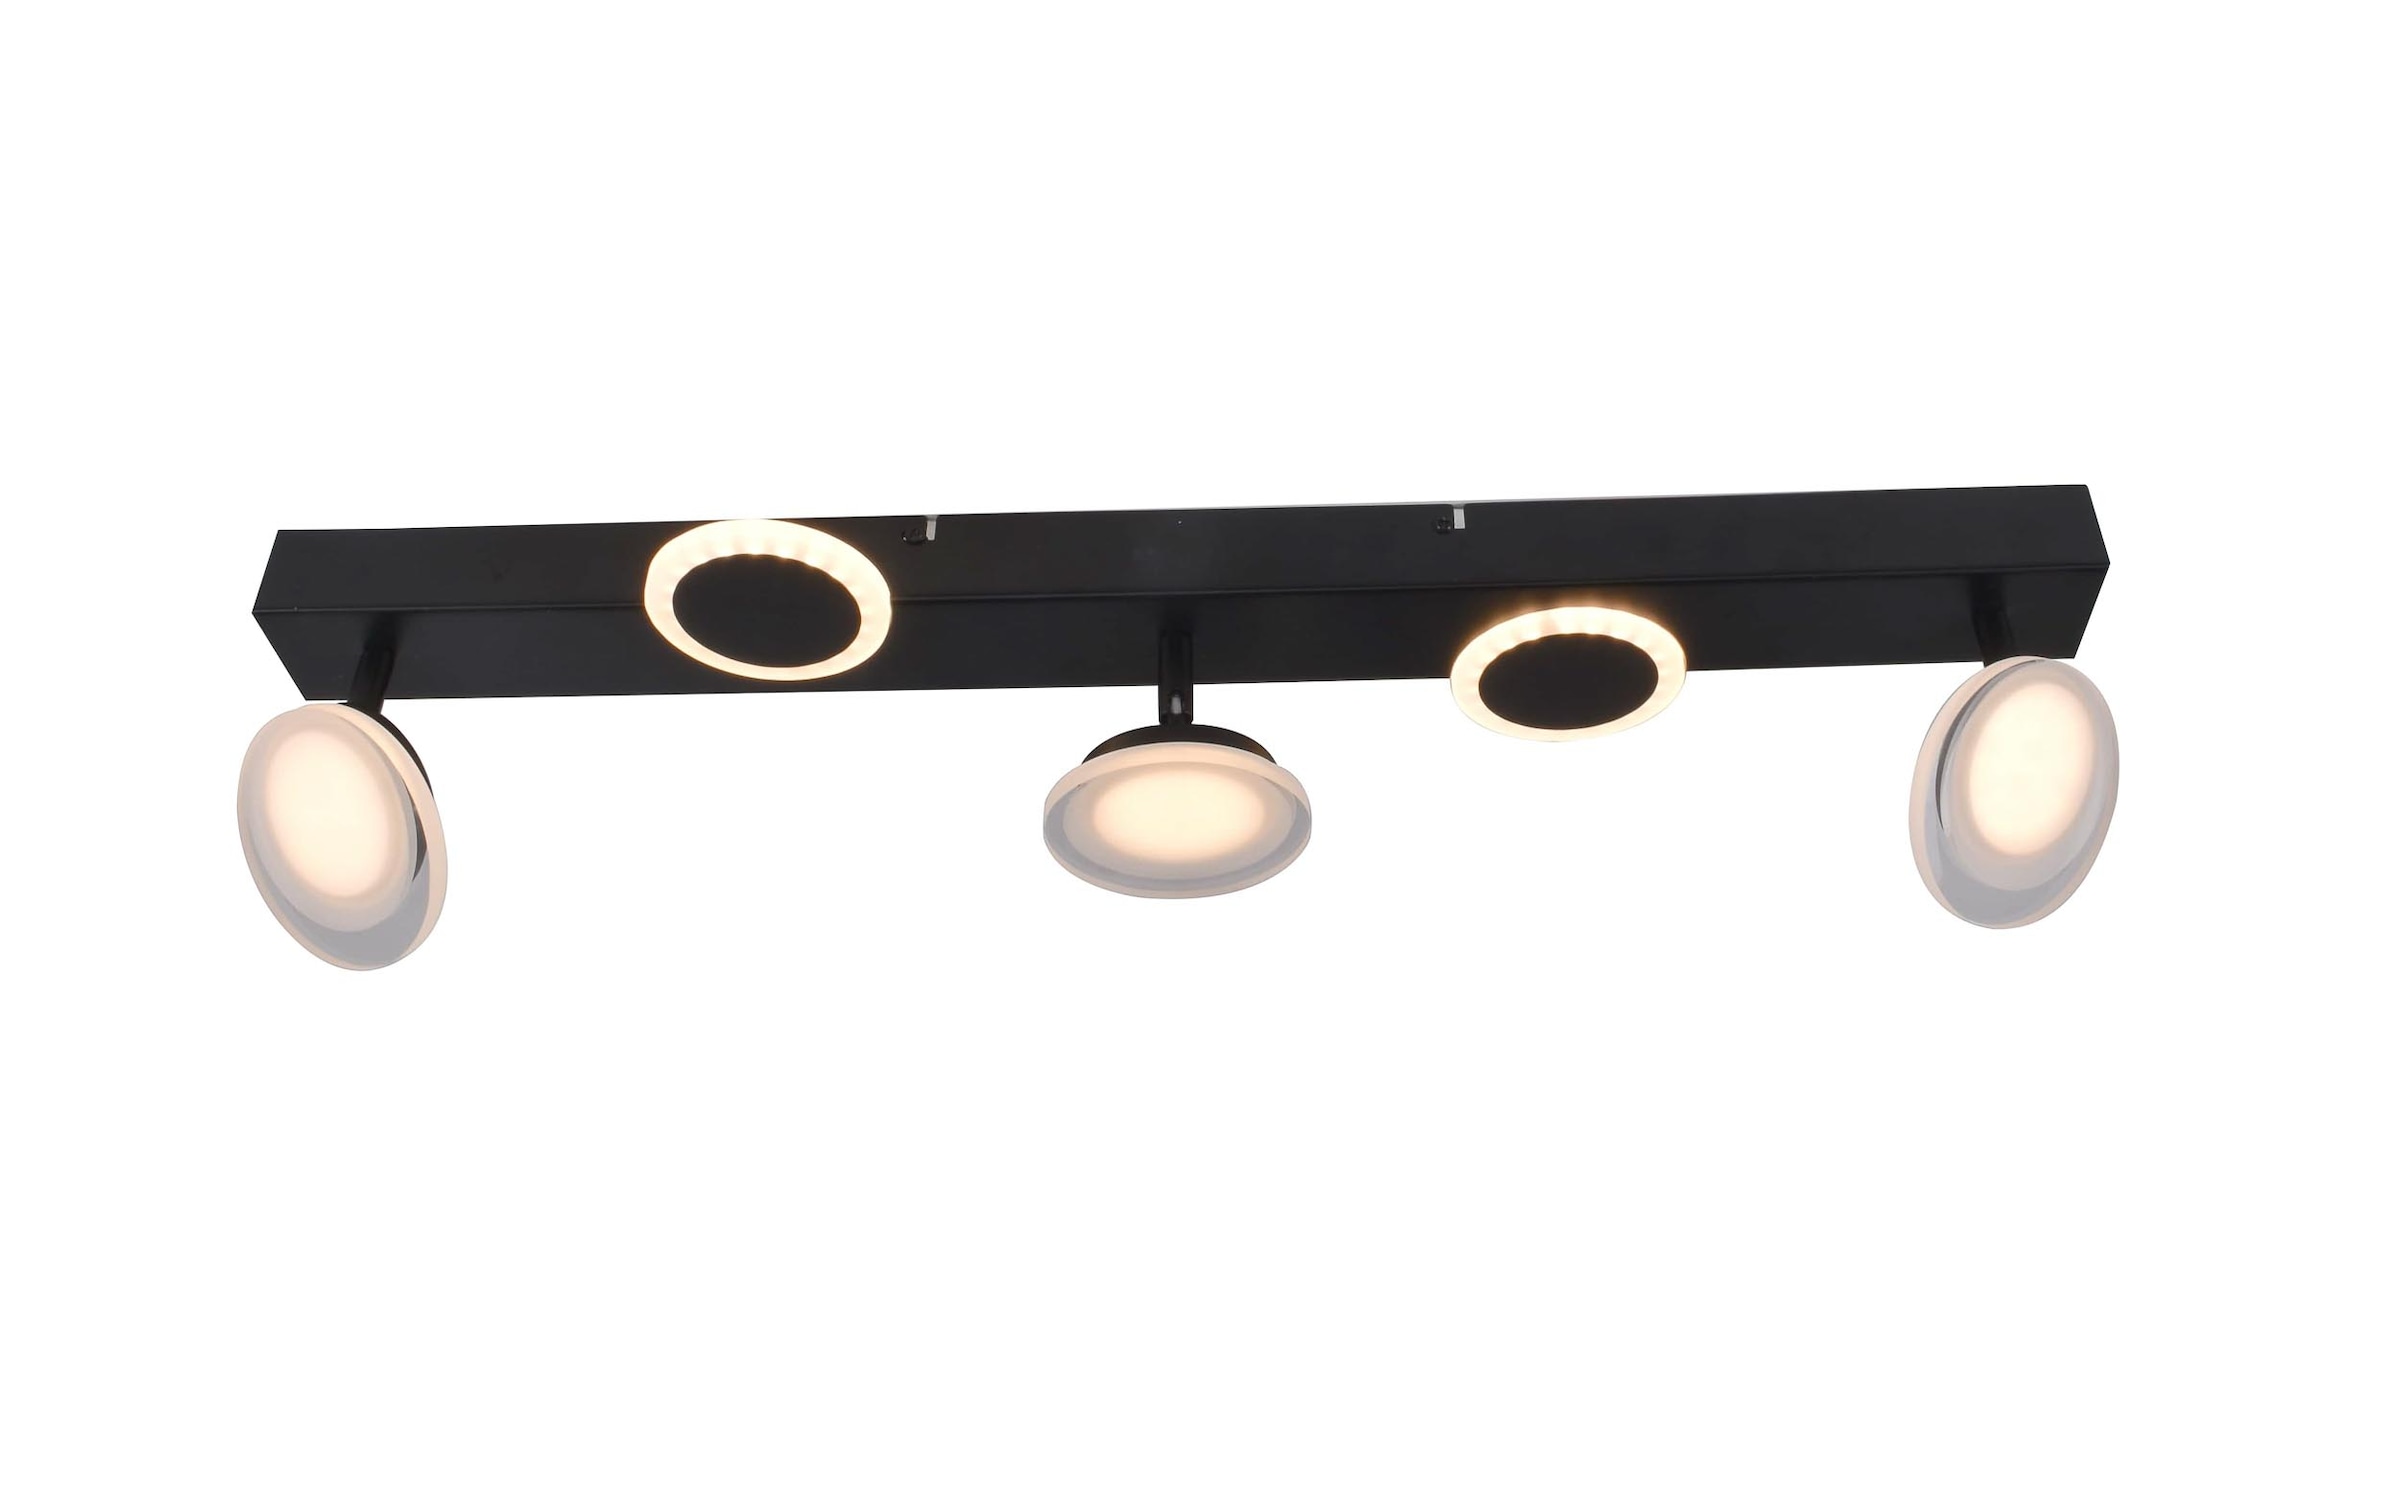 Brilliant LED Deckenstrahler »Meriza«, 3 flammig, 70 cm Breite, 2800lm, warmweiss, schwenkbar, Metall/Kunststoff, schwarz